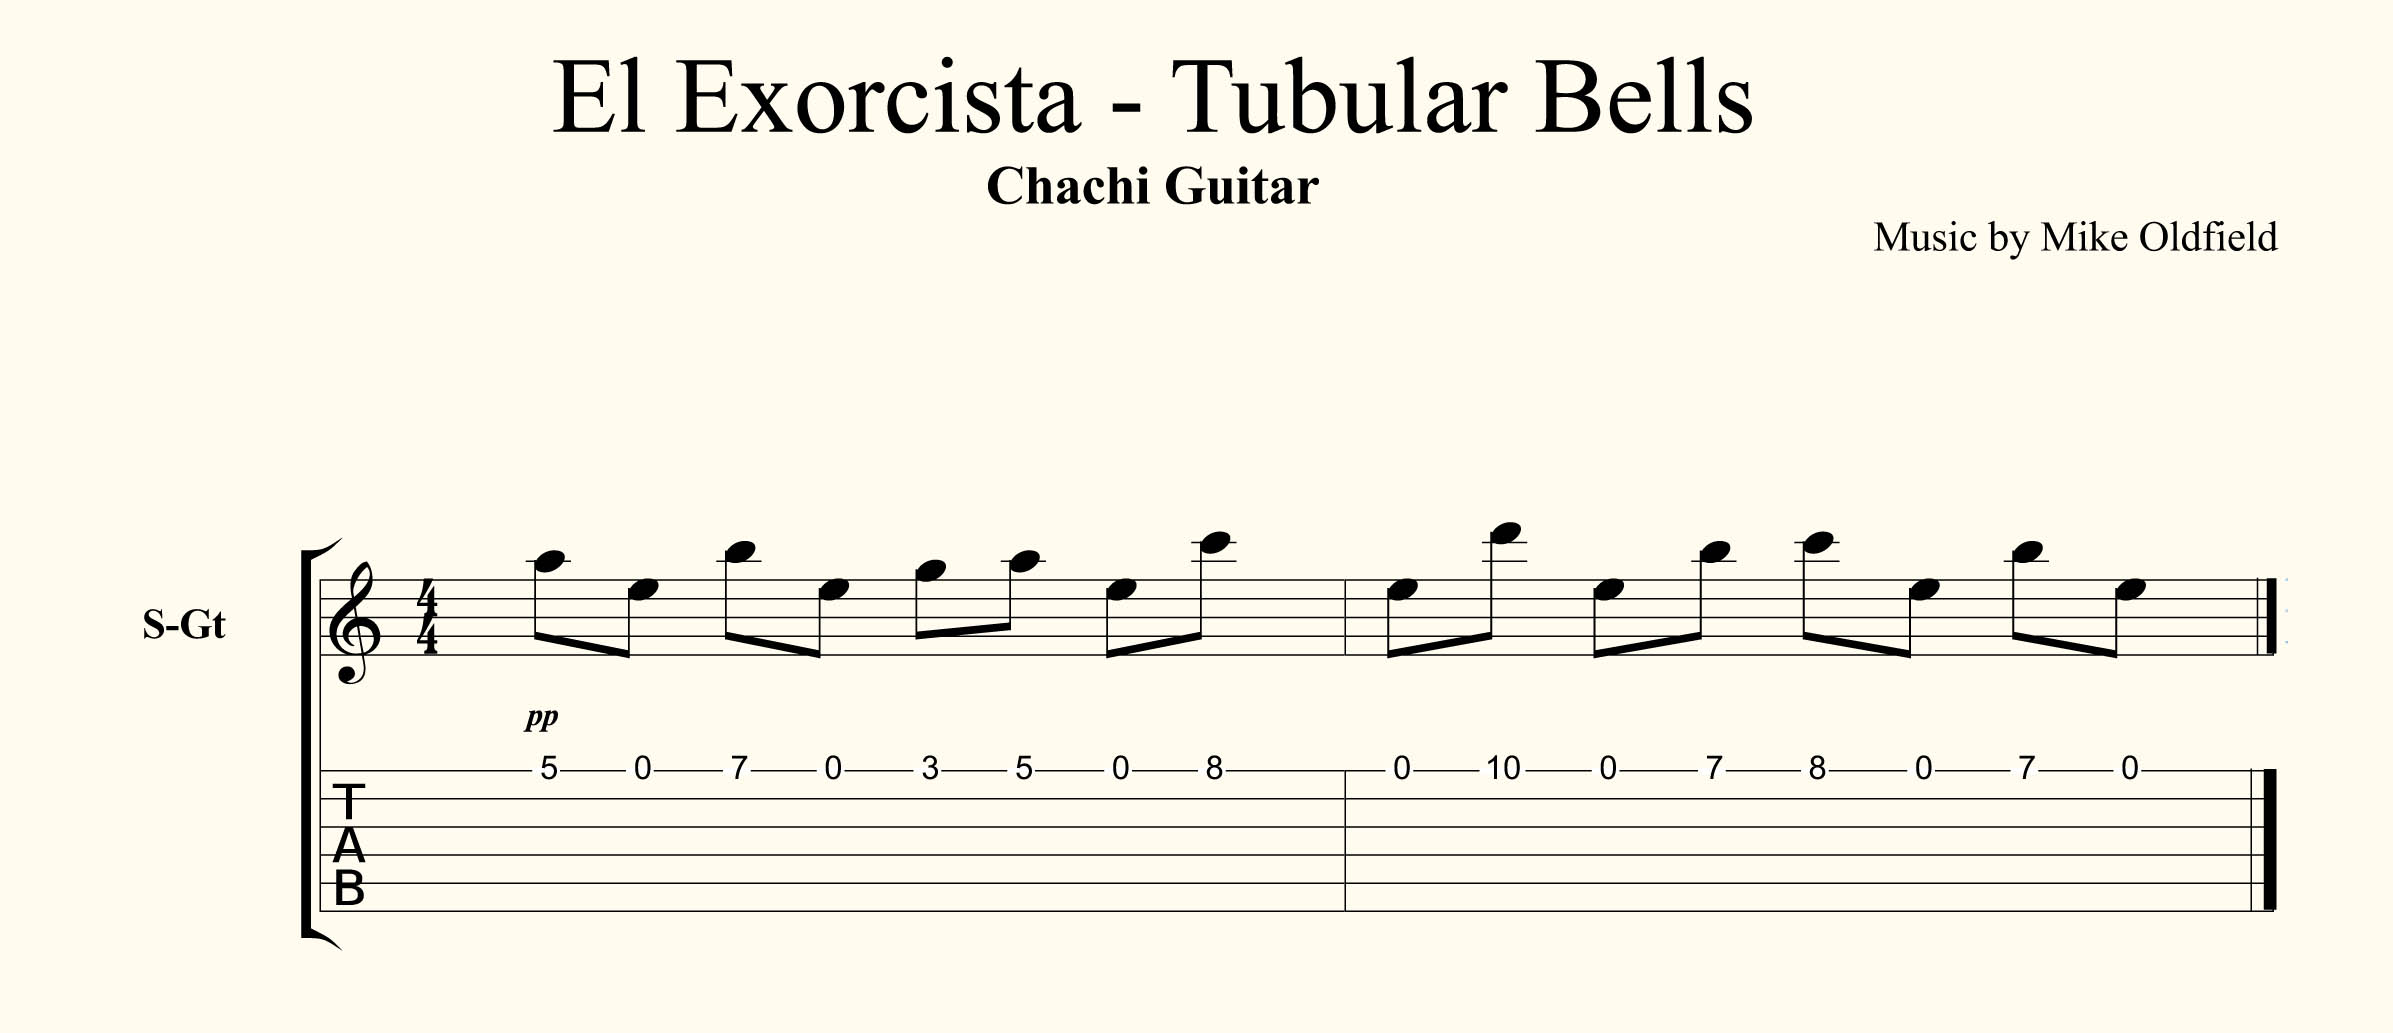 Hasta aquí Banquete frecuentemente Especial Halloween – El Exorcista Tubular Bells Tutorial | Chachi Guitar